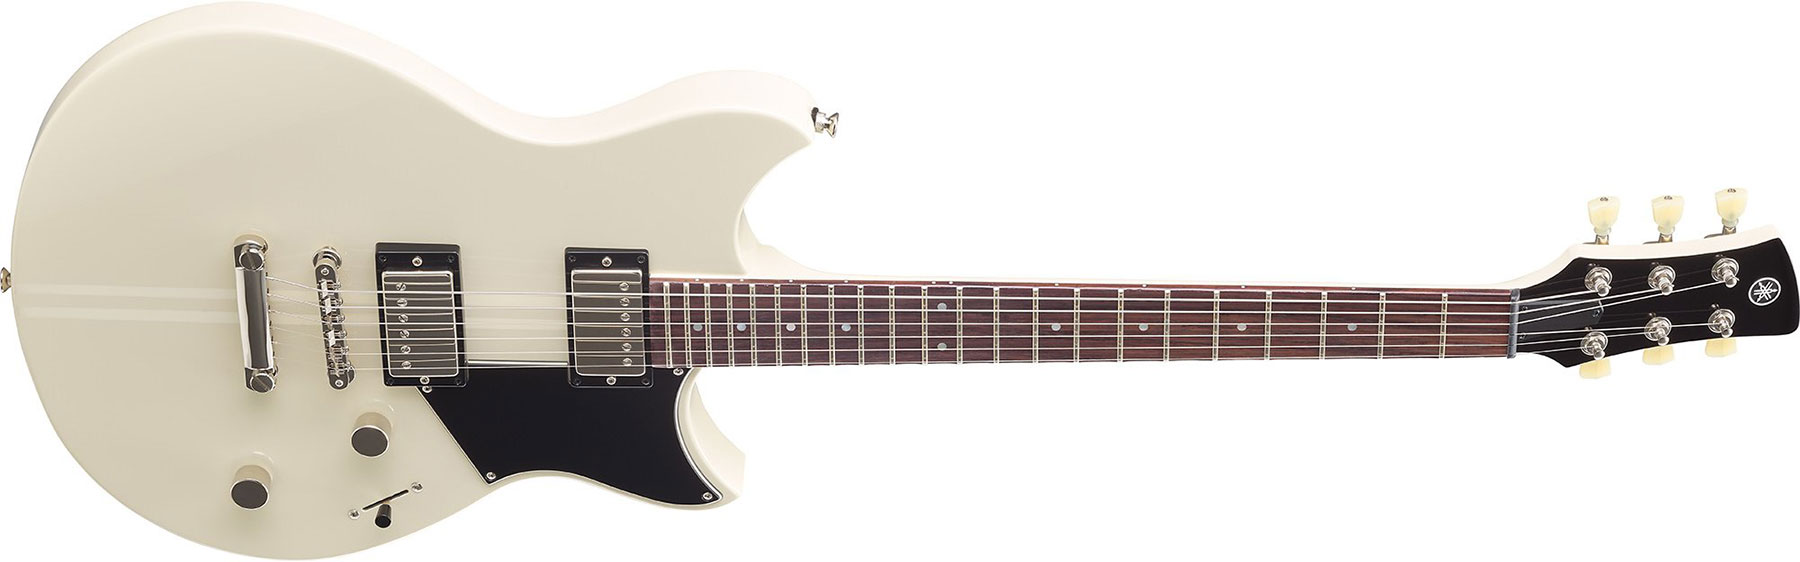 Yamaha Rse20 Revstar Element Hh Ht Rw - Vintage White - Guitarra eléctrica de doble corte - Variation 1